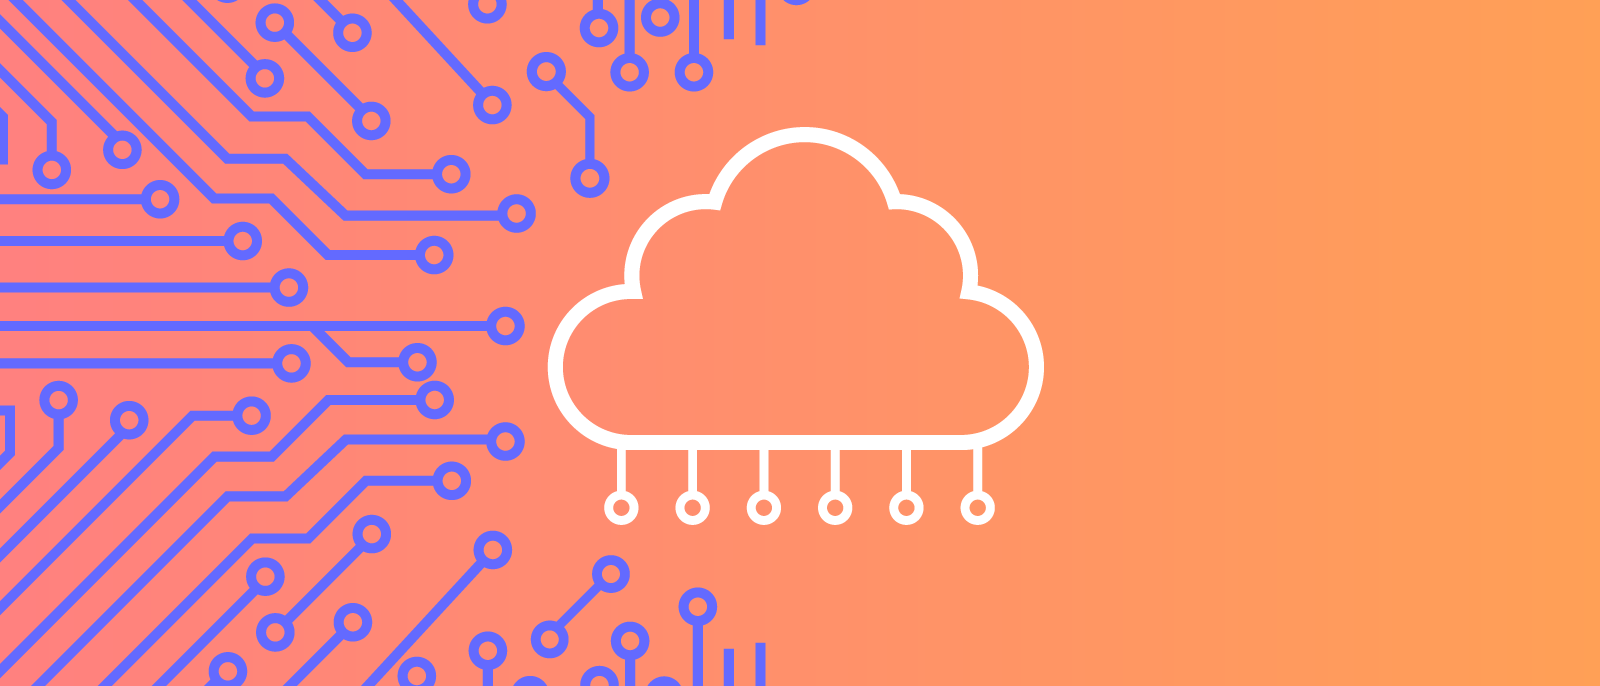 رایانش ابری (Cloud computing) چیست بهمراه مزایا و معایب